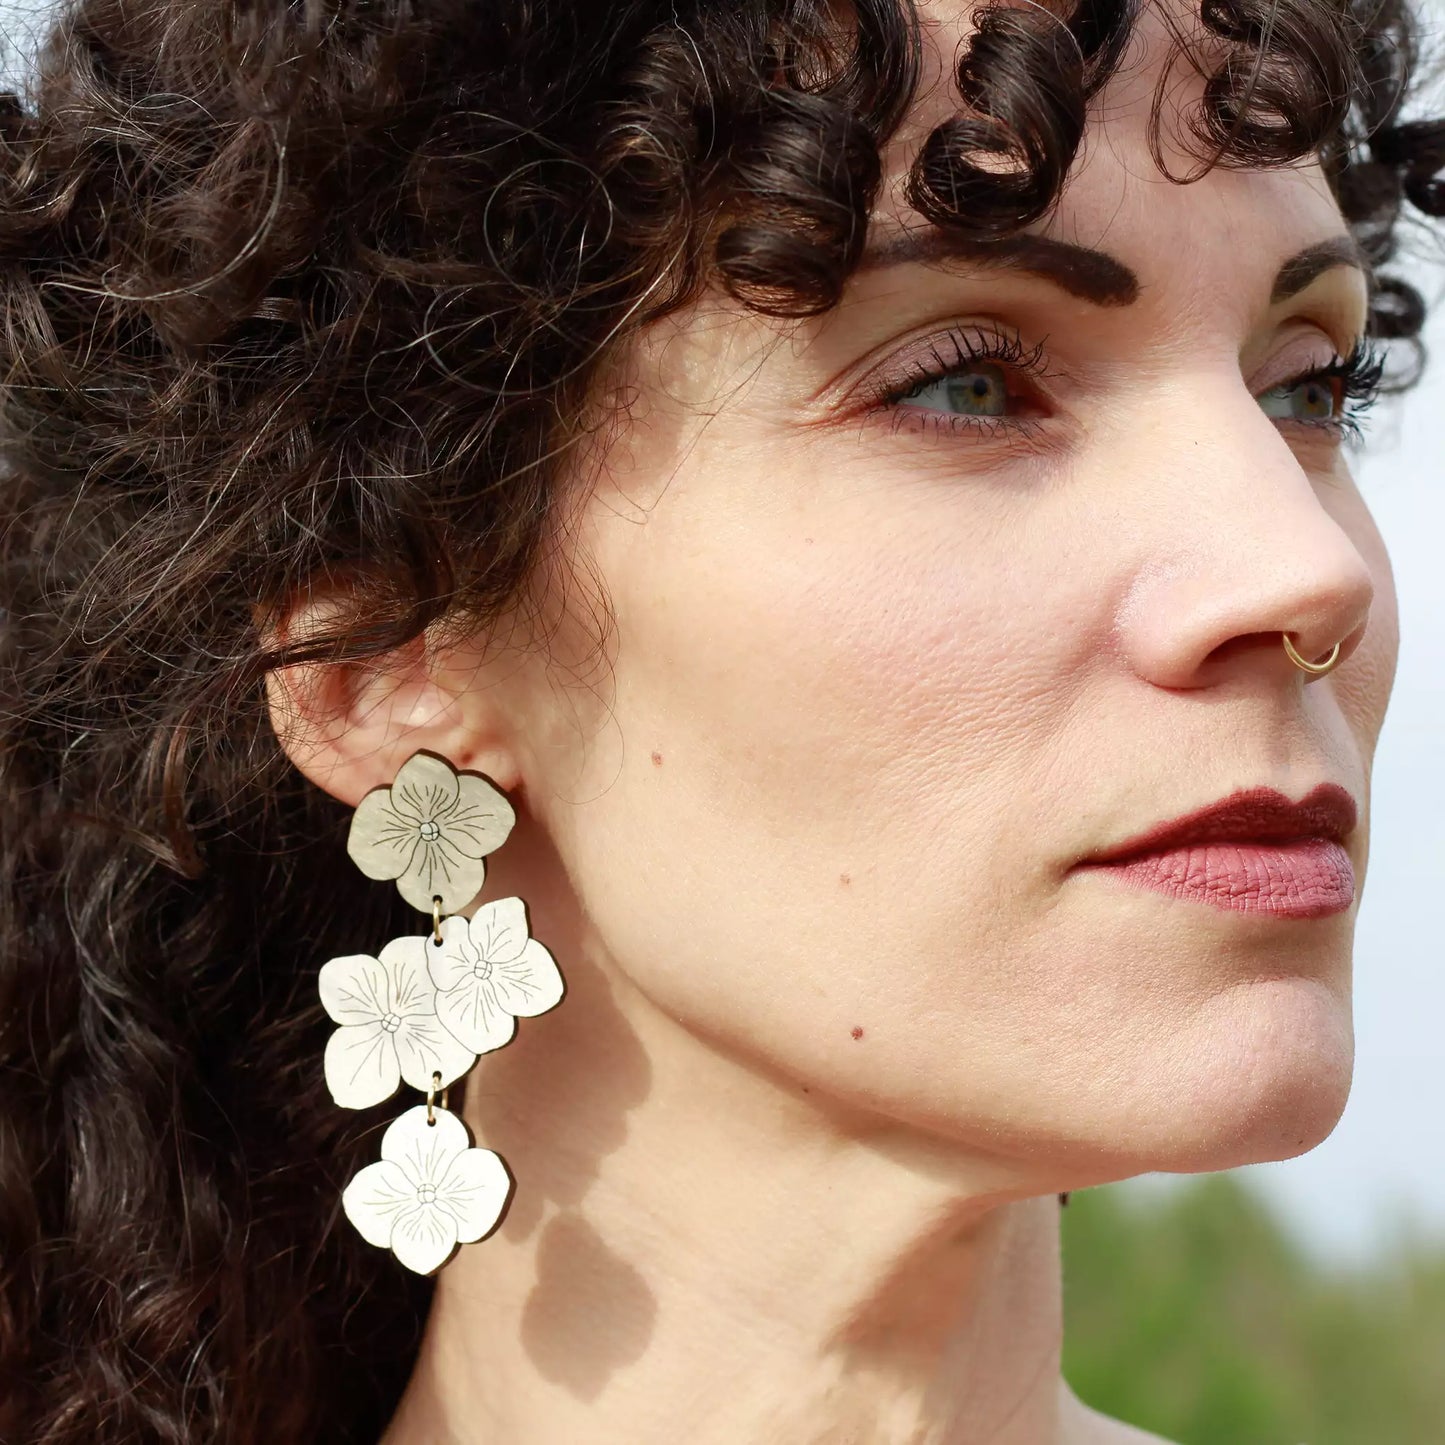 Hydrangea Statement Earrings - White